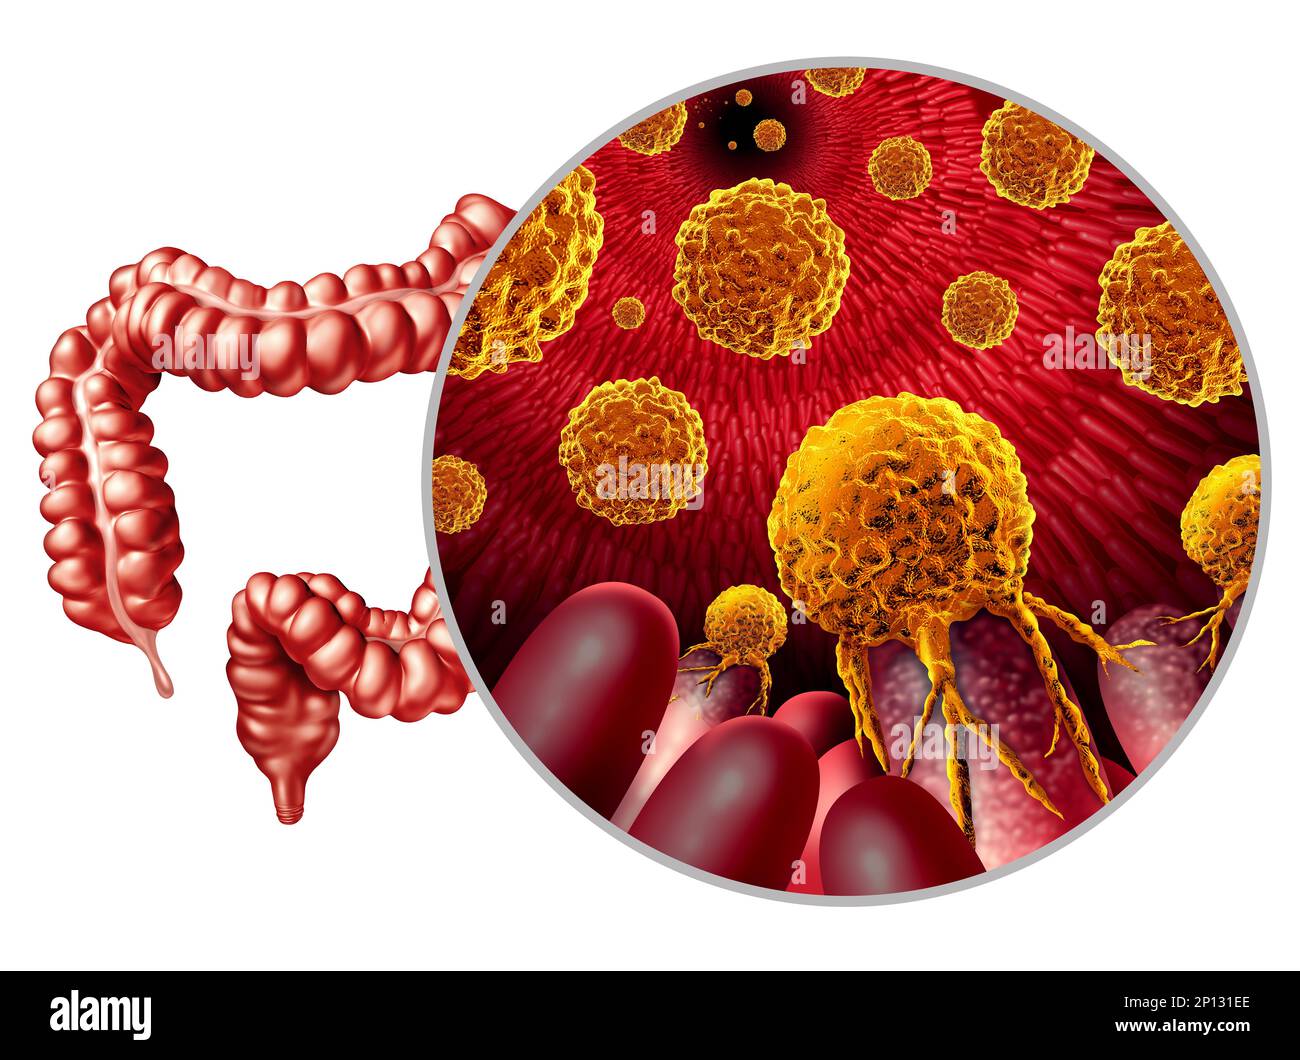 Kolonkarzinomwachstum oder kolorektales malignes Tumorkonzept als medizinische Illustration eines Dickdarms mit metastasierter karzinogener Erkrankung Stockfoto